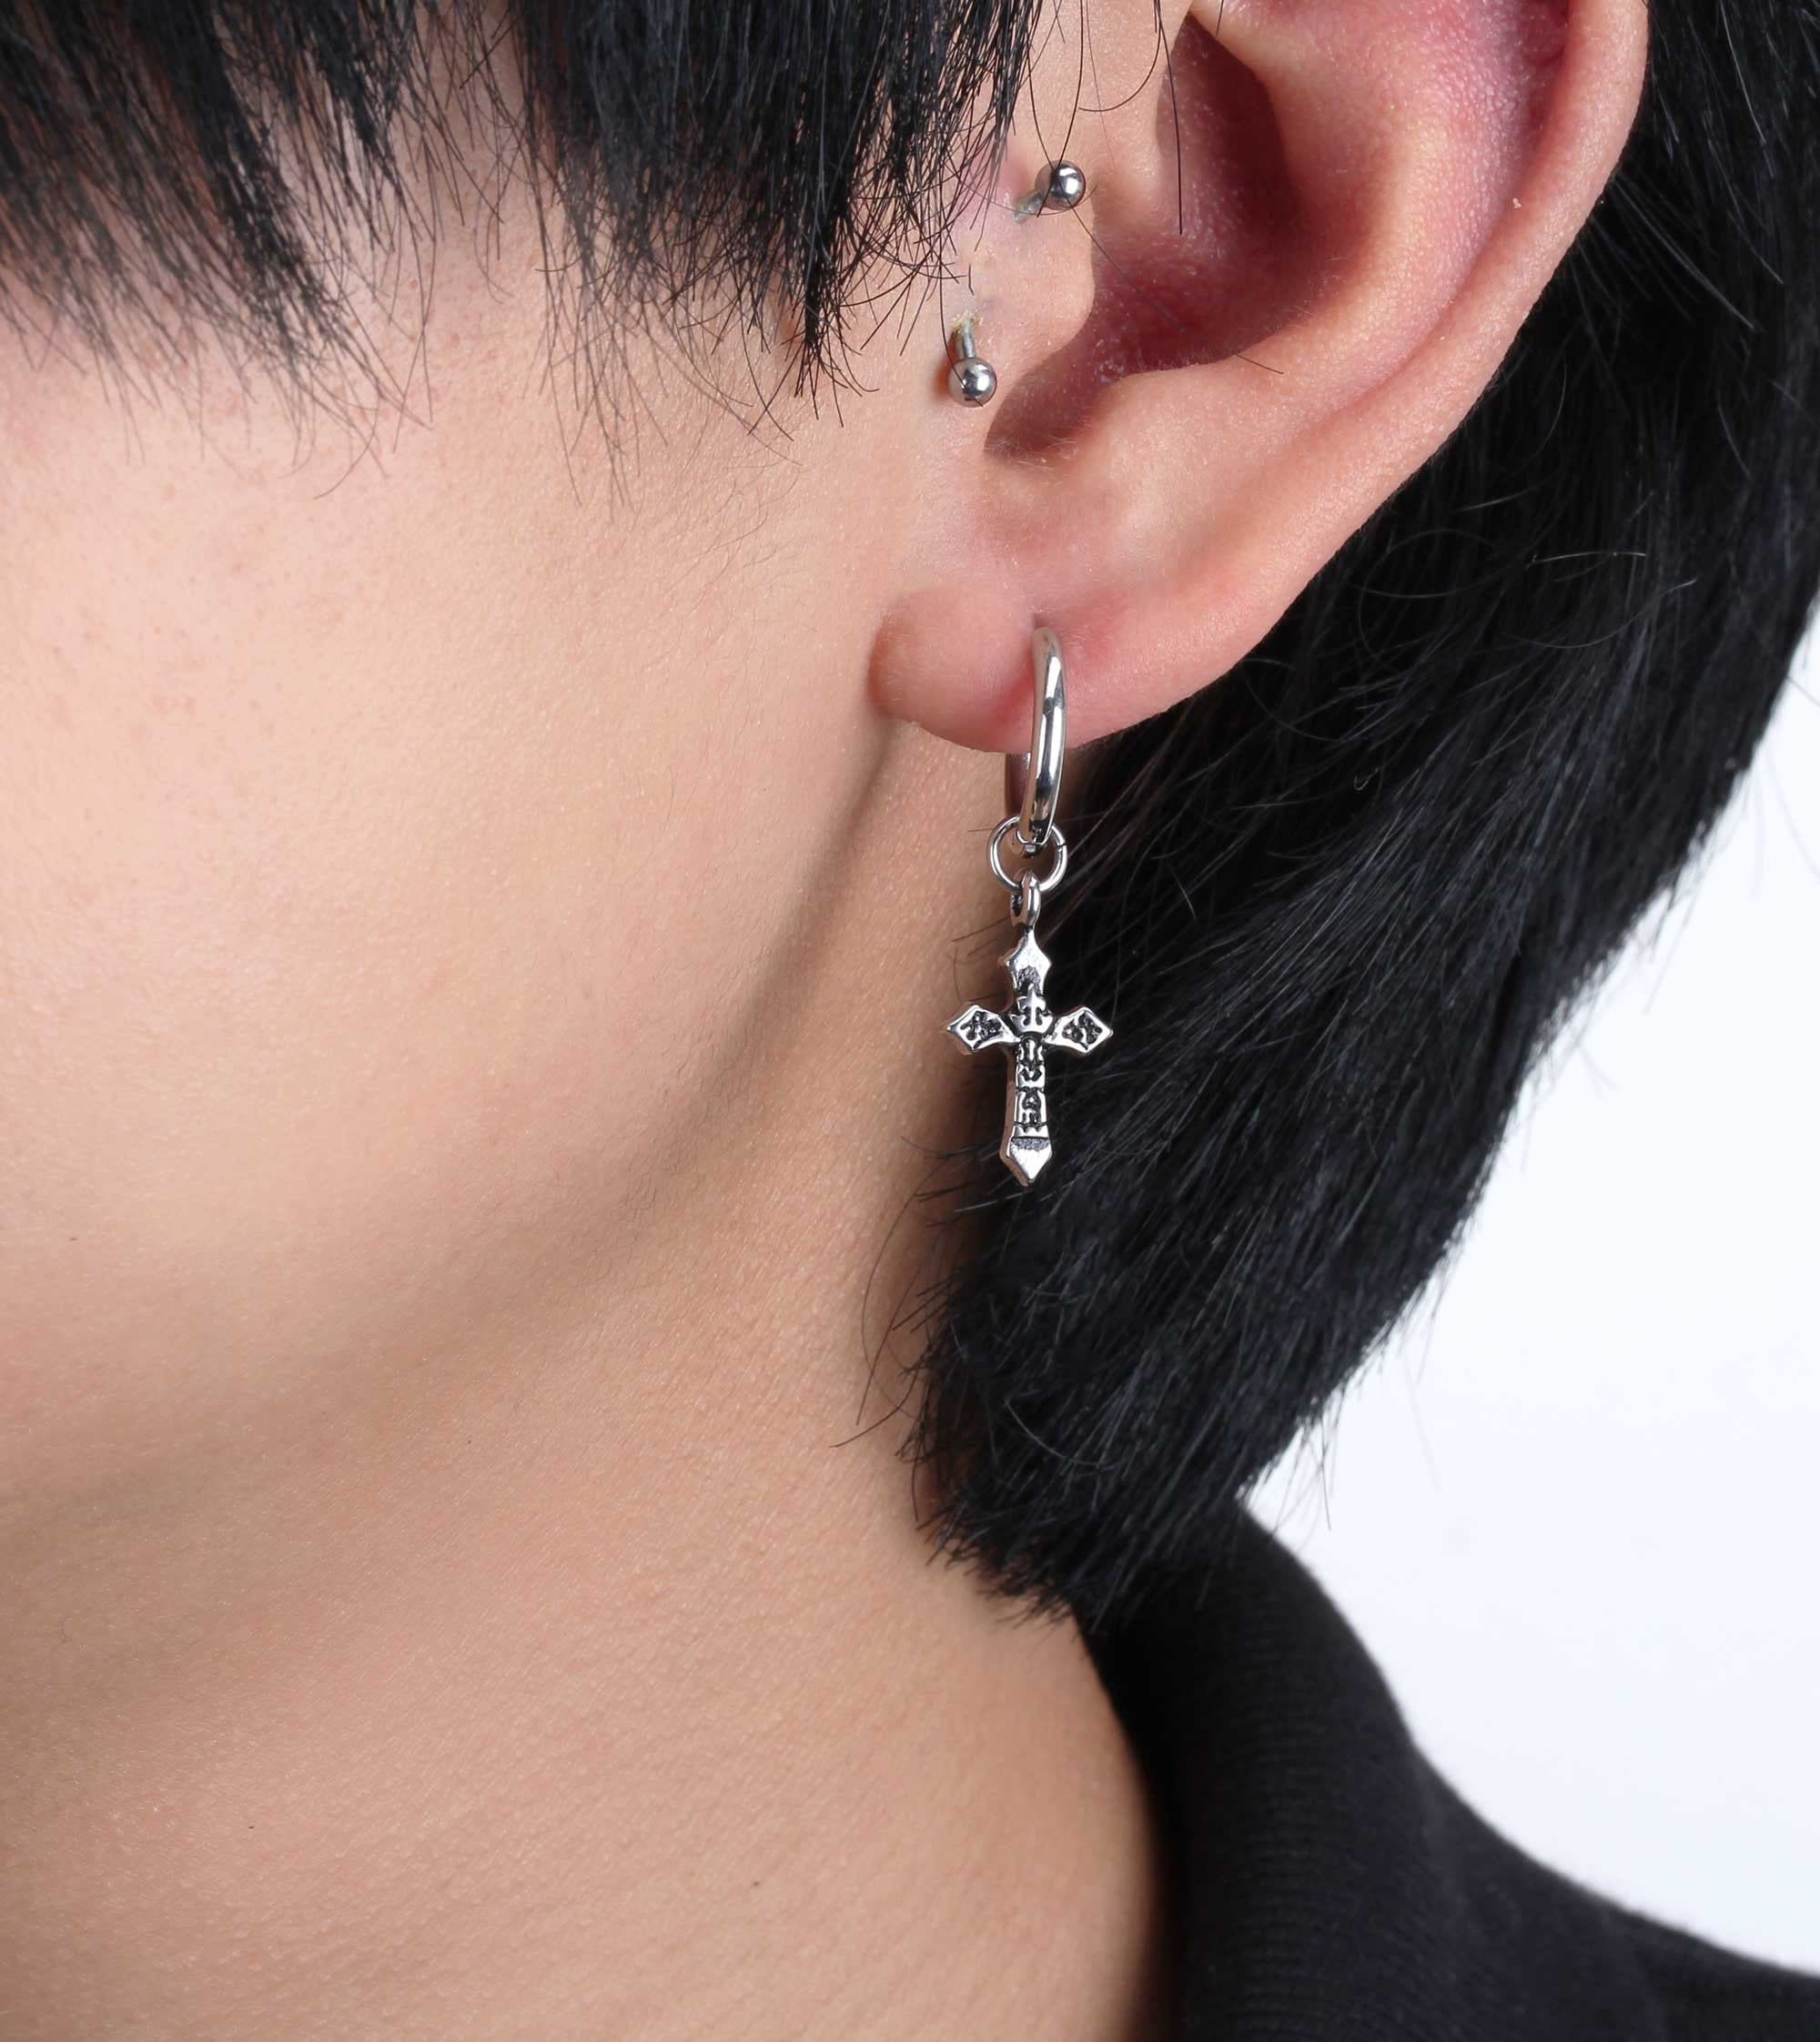 BTS Jimin Earrings Hoop Cross Drop Earrings BTS Earrings Jimin - Etsy